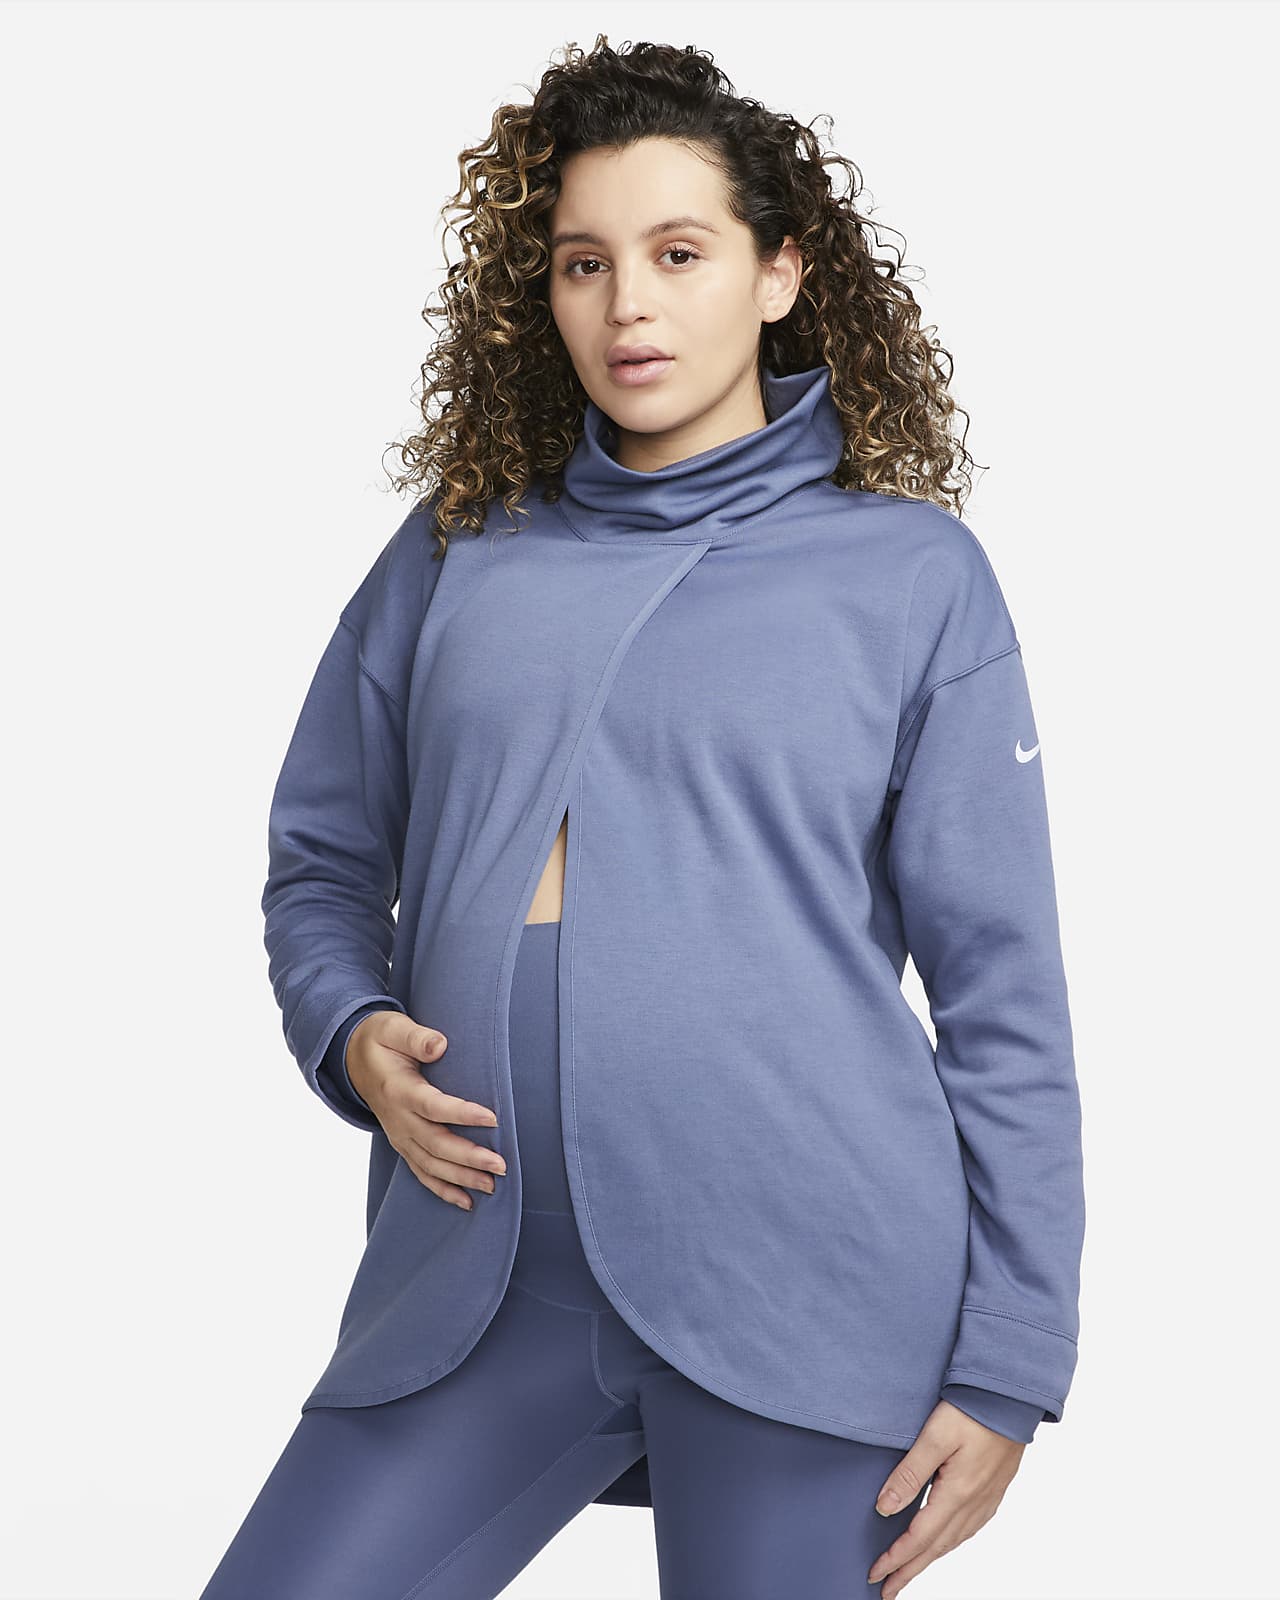 Maglia reversibile Nike (M) – Donna (maternità)